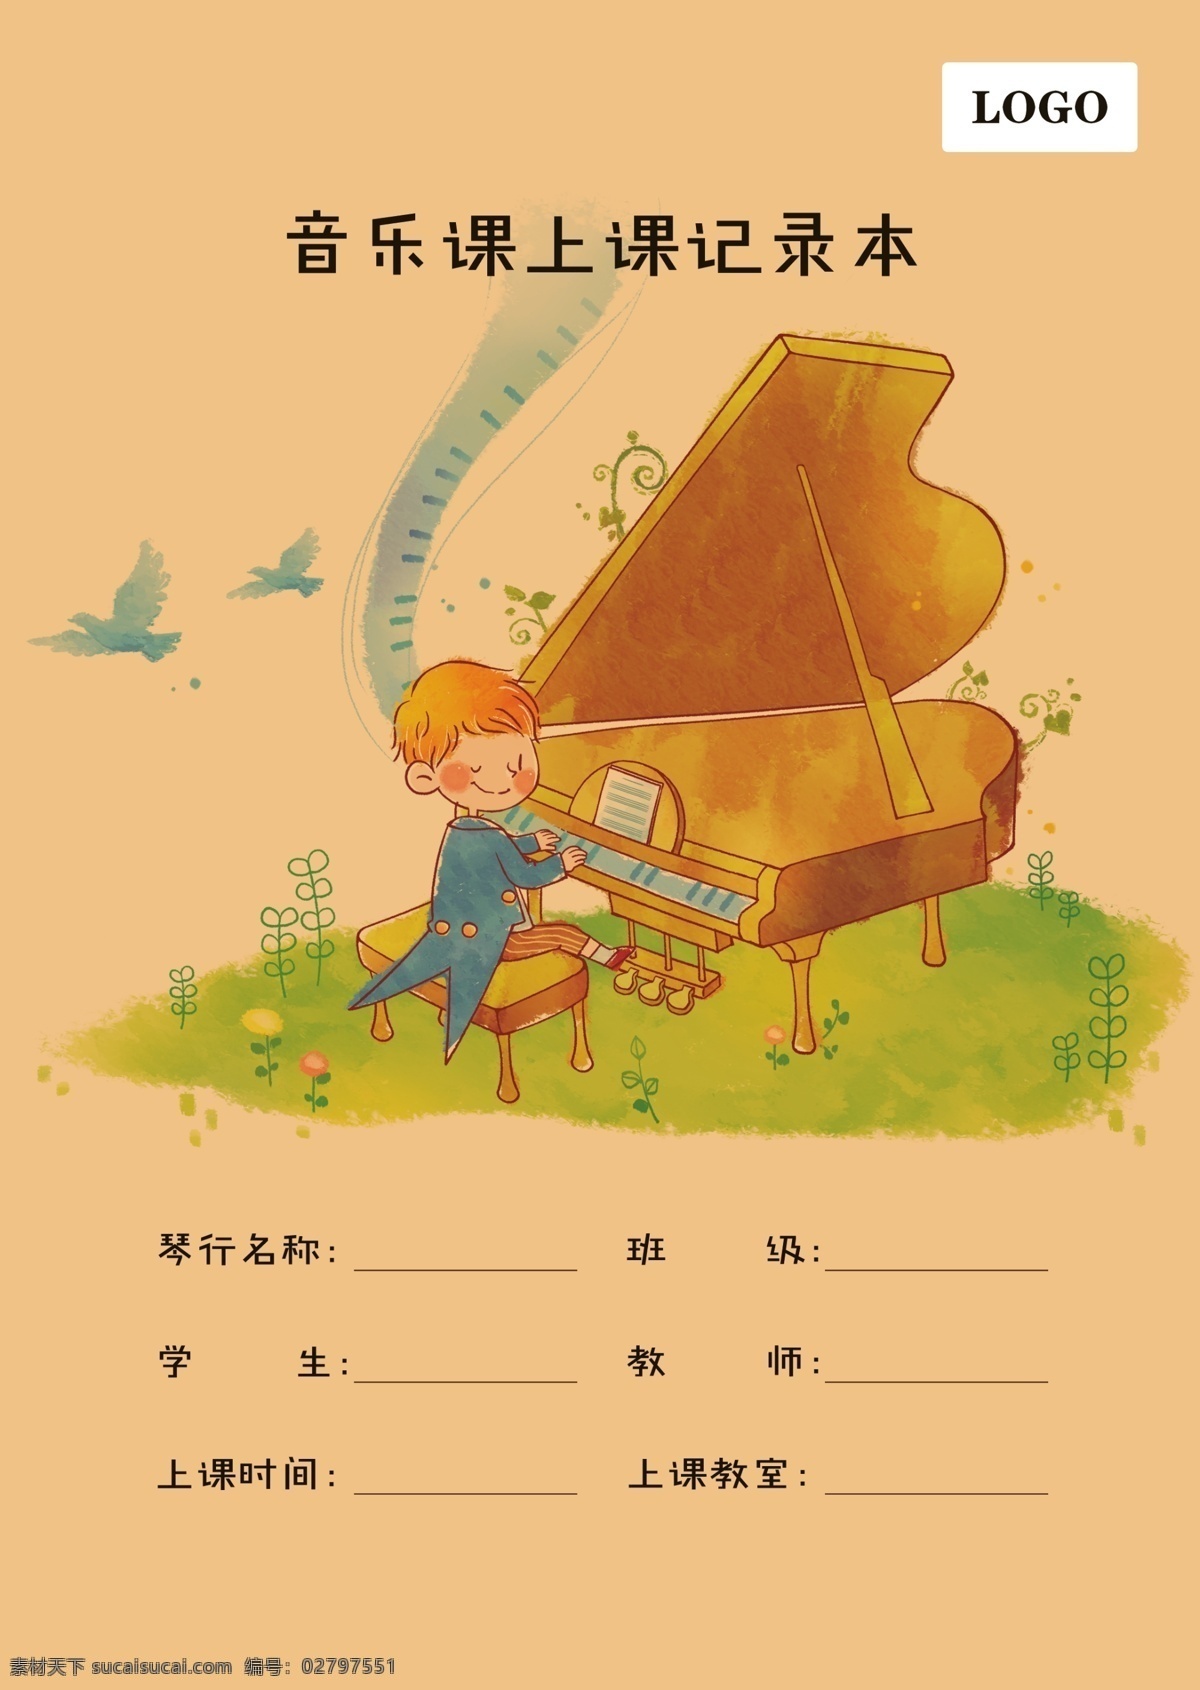 记录本 钢琴 儿童钢琴 音乐 绘本 本子 音 风景背景 背景 广告背景 高清 设计图 高清素材 psd素材 设计素材 模板设计 版面设计背景